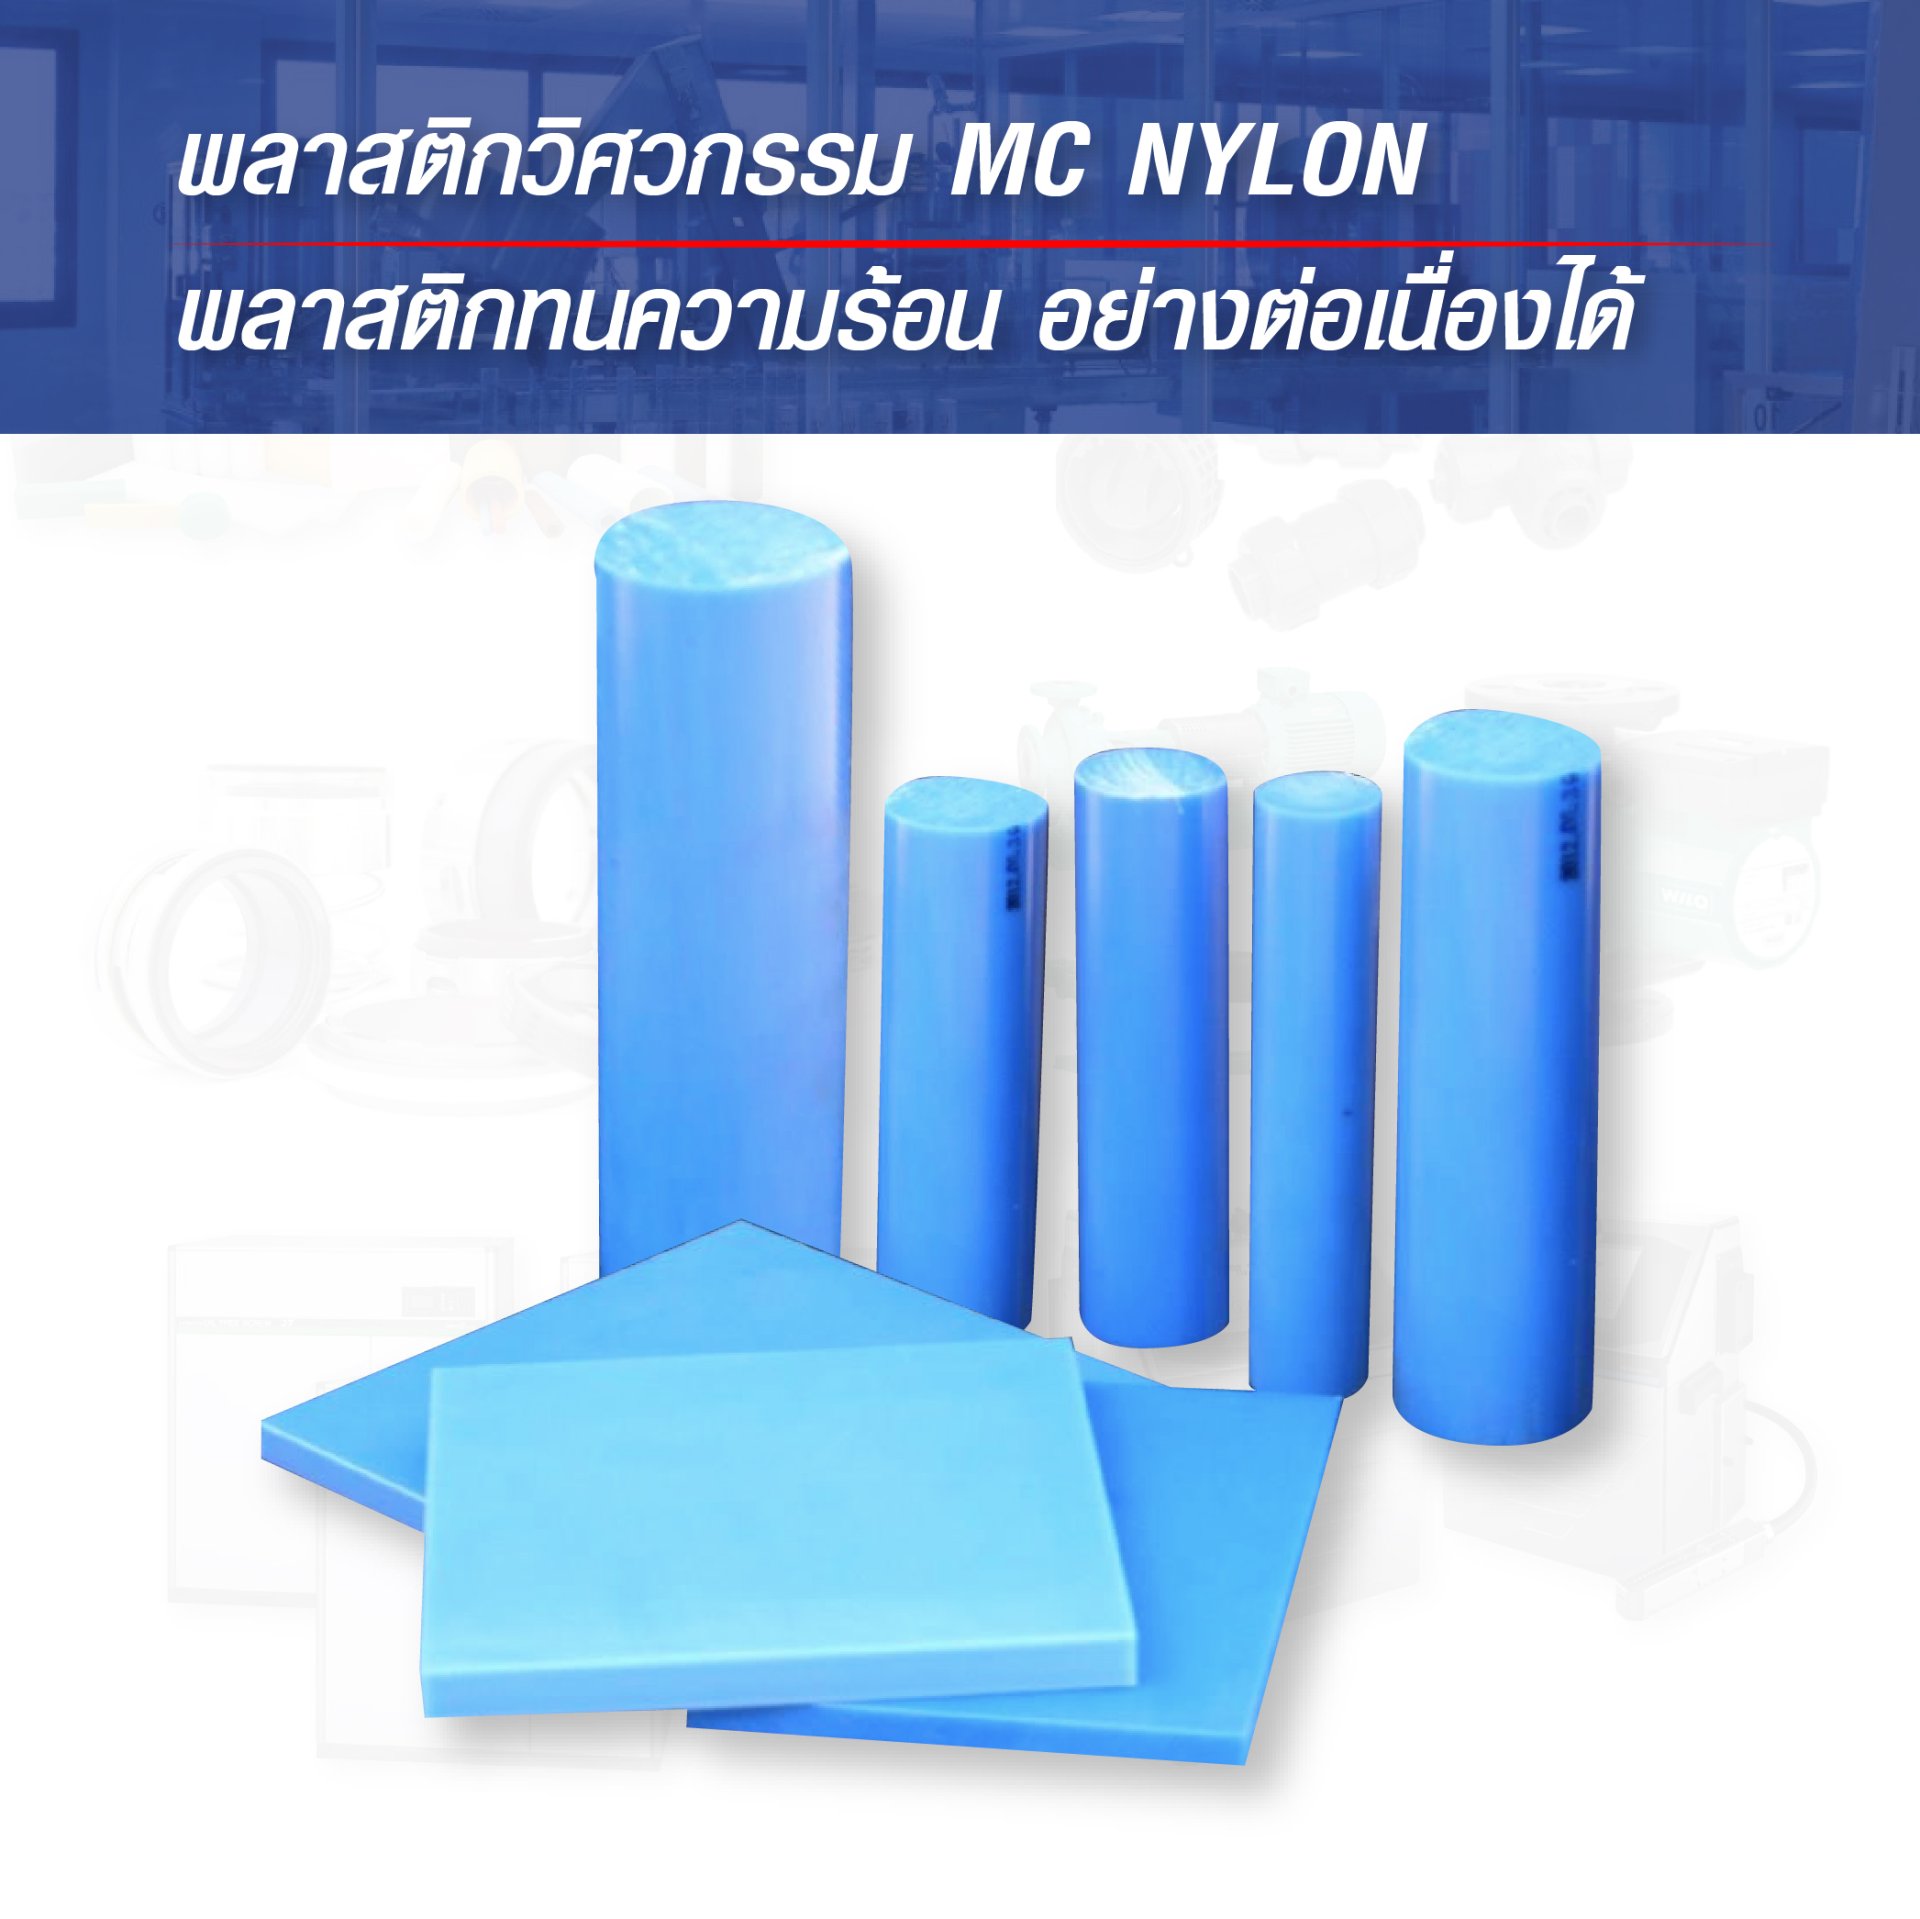 พลาสติกวิศวกรรม MC Nylon - พลาสติกทนความร้อน อย่างต่อเนื่องได้ยาวนานกว่า Nylon ทั่วไป